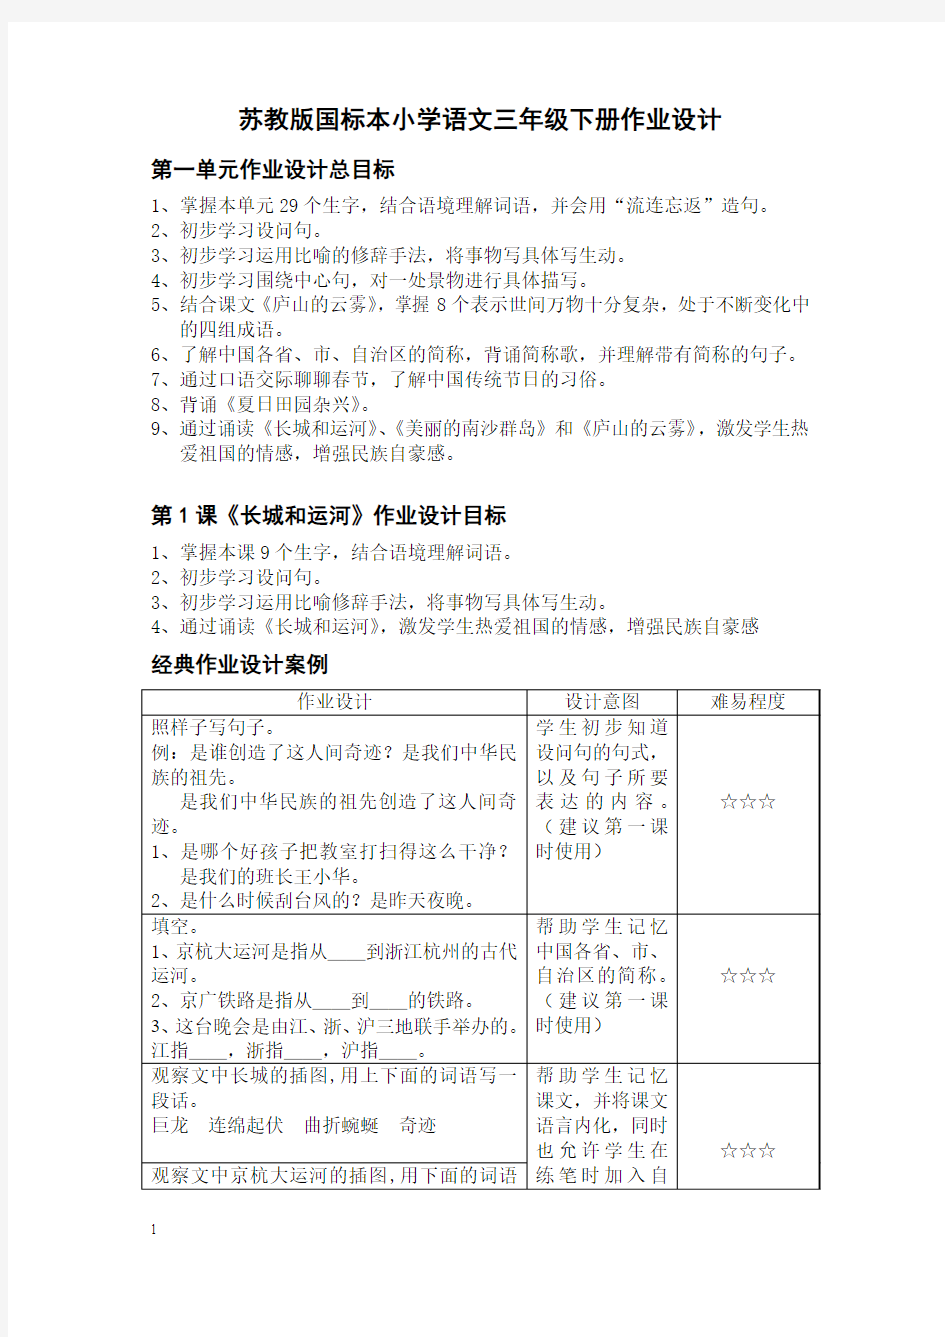 苏教版国标本小学语文三年级下册作业设计